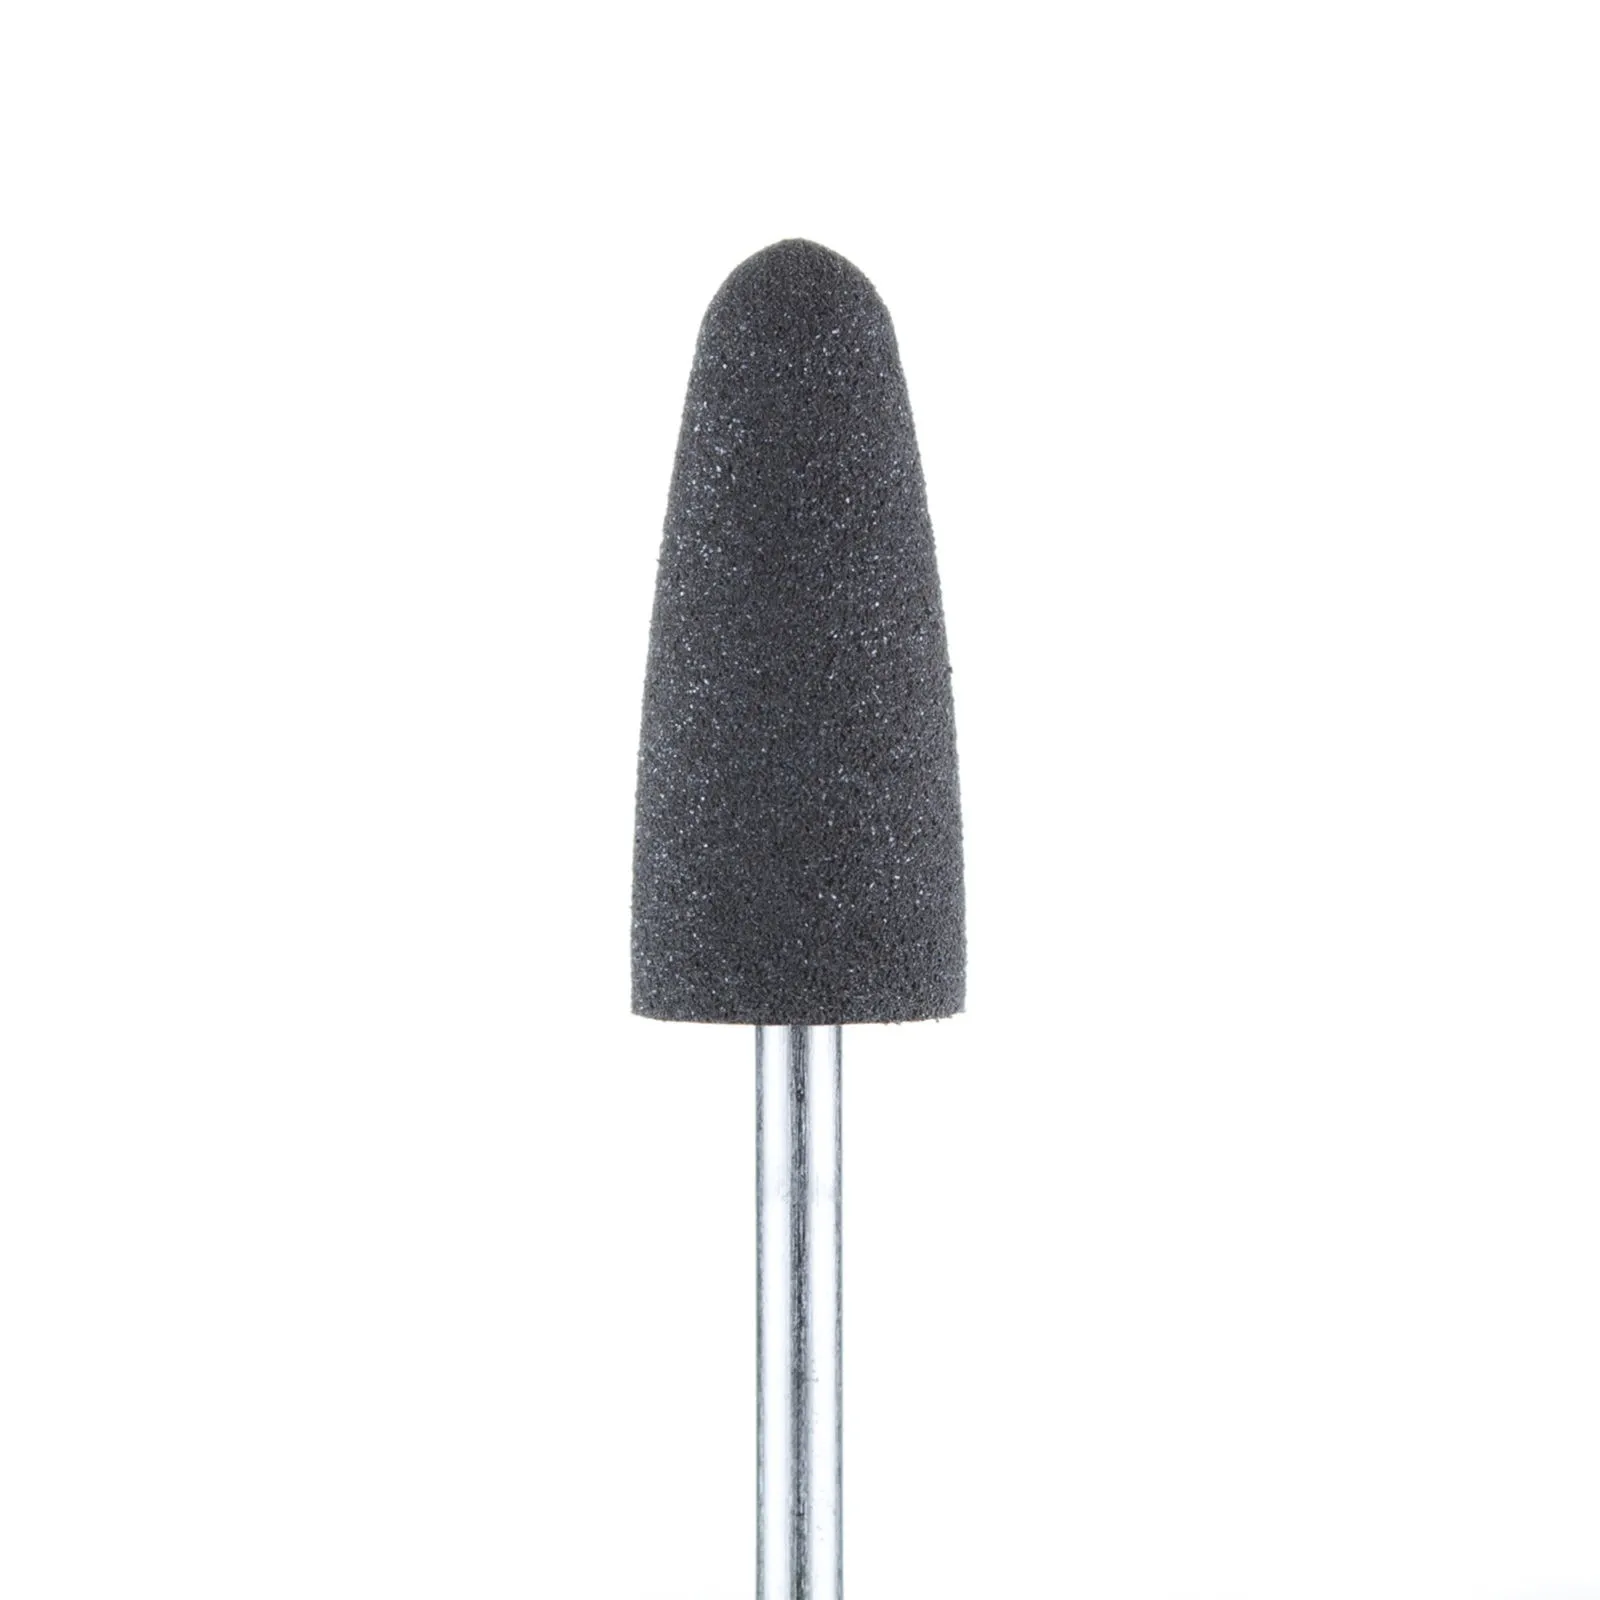 Полировщик средний закругленный конус силиконовый темно-серый (диаметр 8 мм)